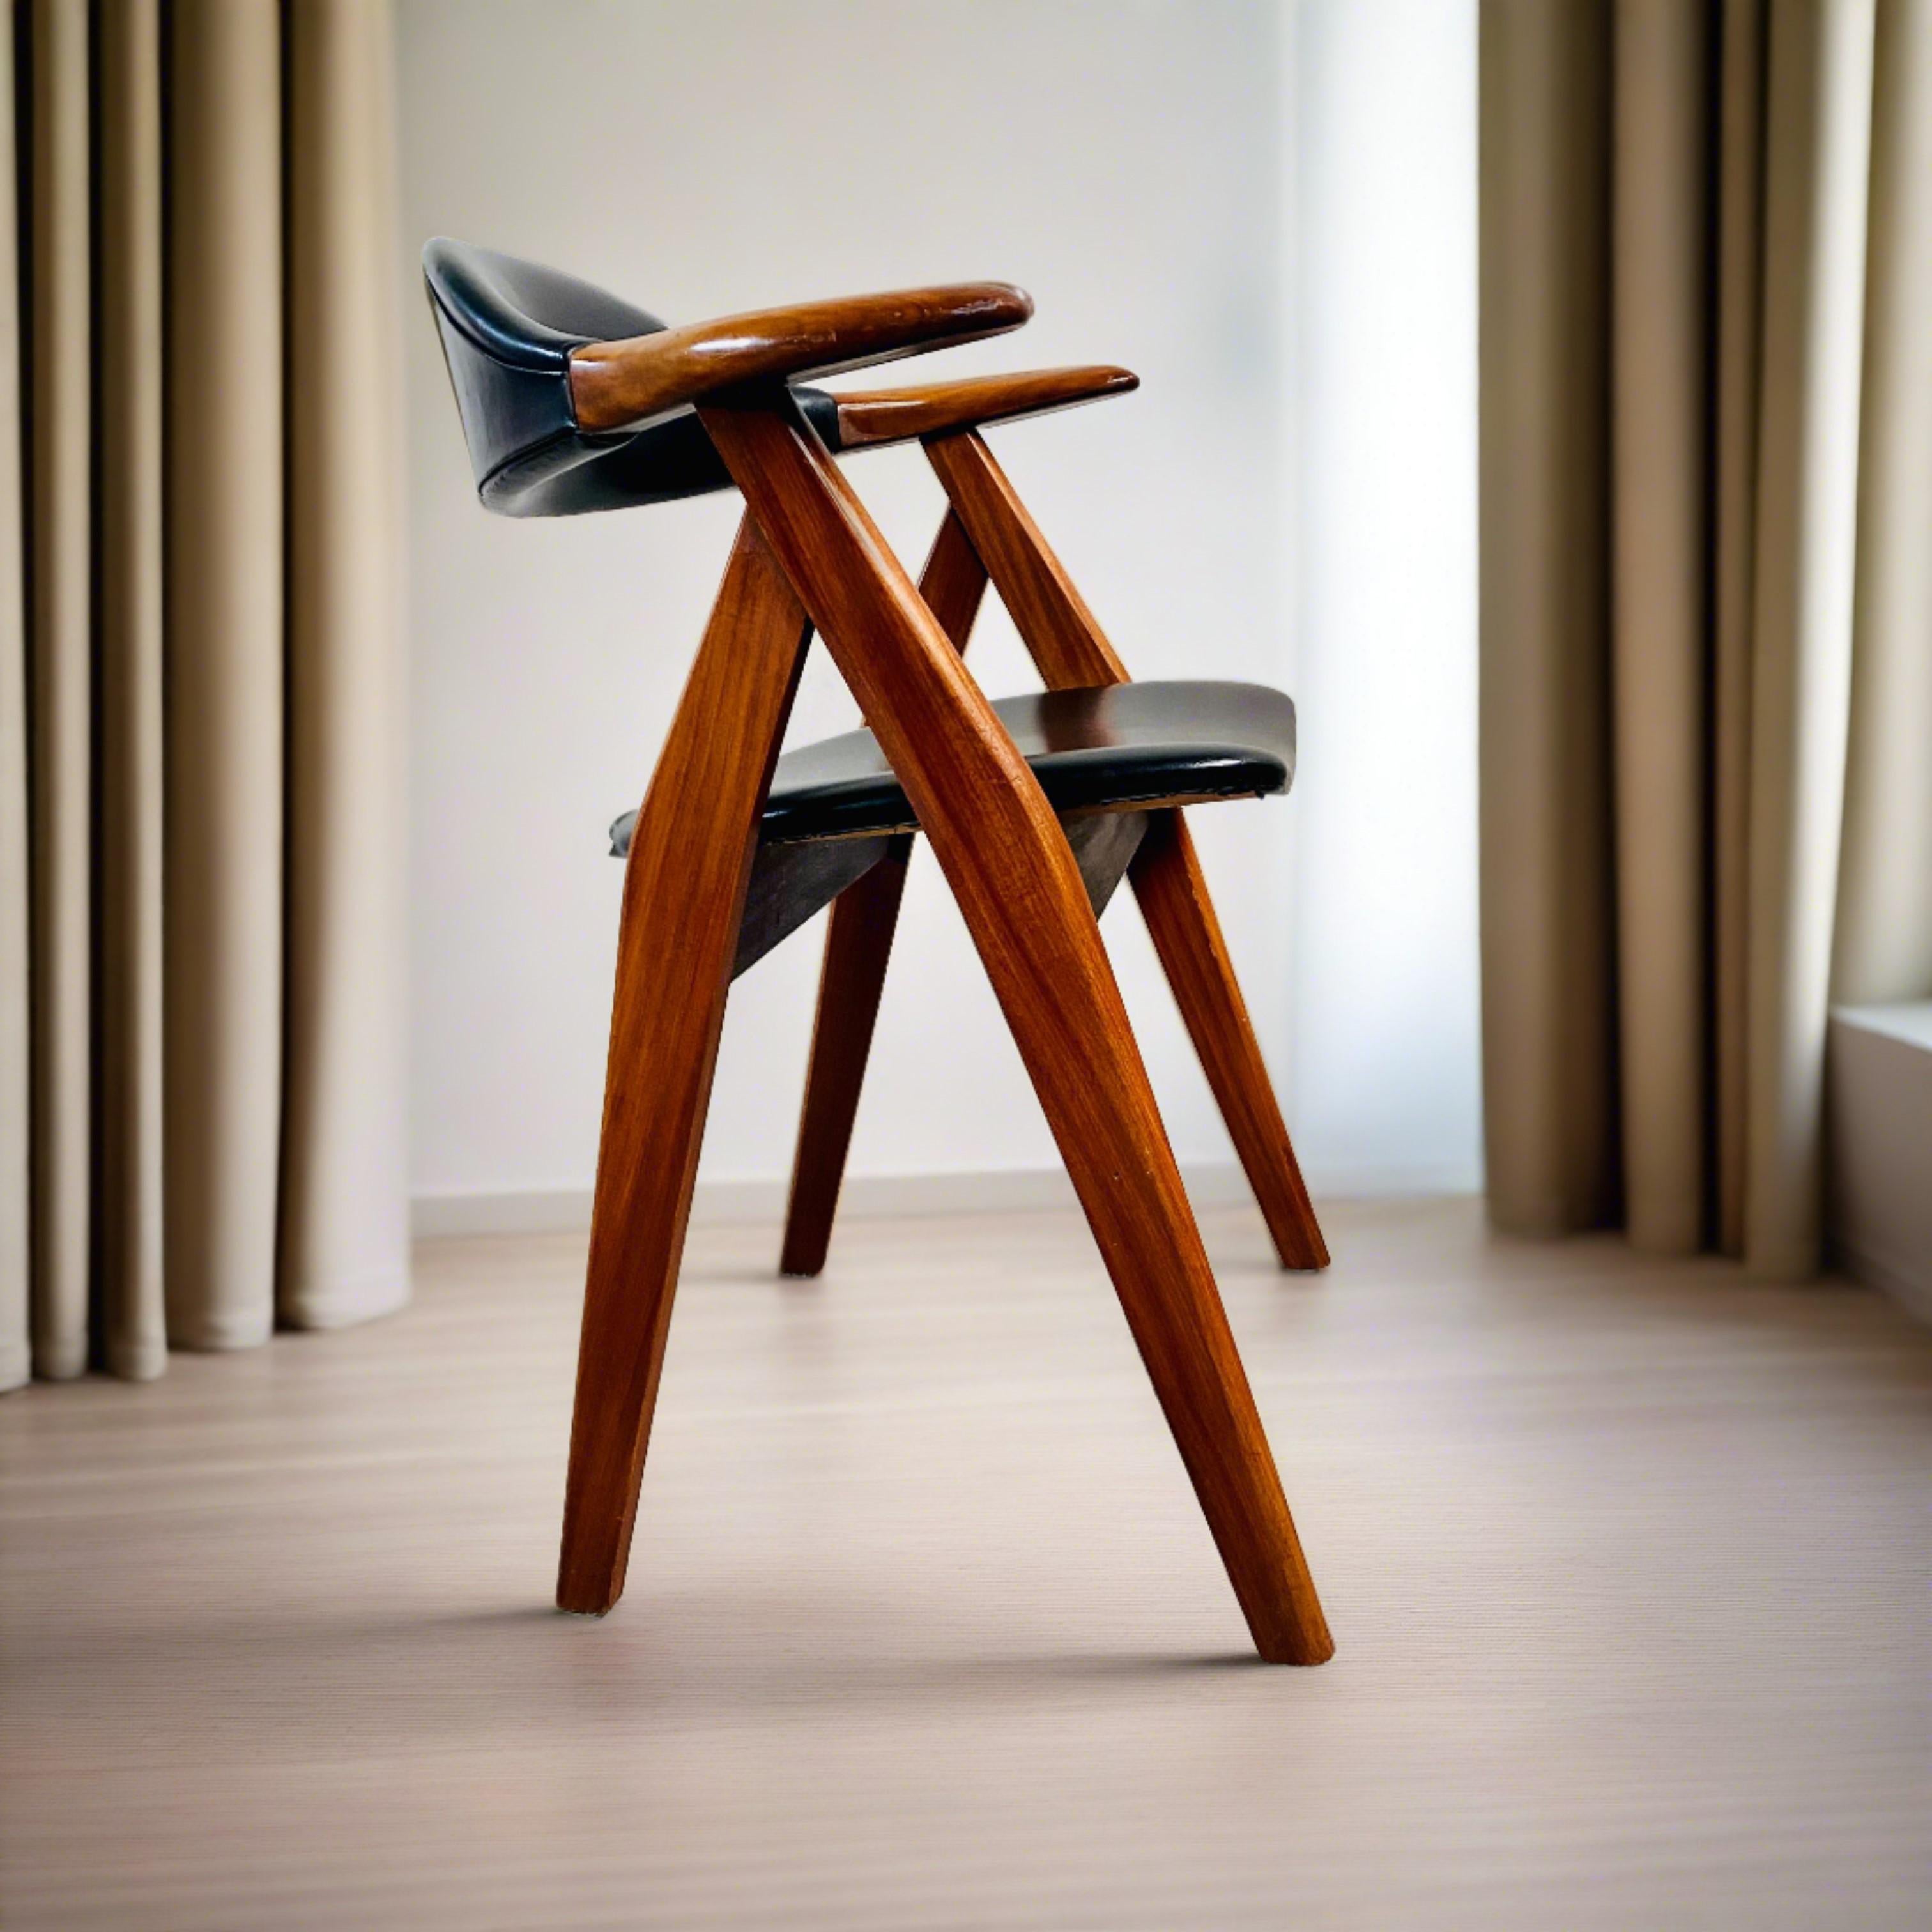 Voici la chaise Cow Horn de Tijsseling Meubelfabriek, un chef-d'œuvre intemporel né aux Pays-Bas en 1960. Fabriquée avec précision, cette chaise emblématique allie harmonieusement l'élégance et le confort, avec un élégant revêtement en similicuir